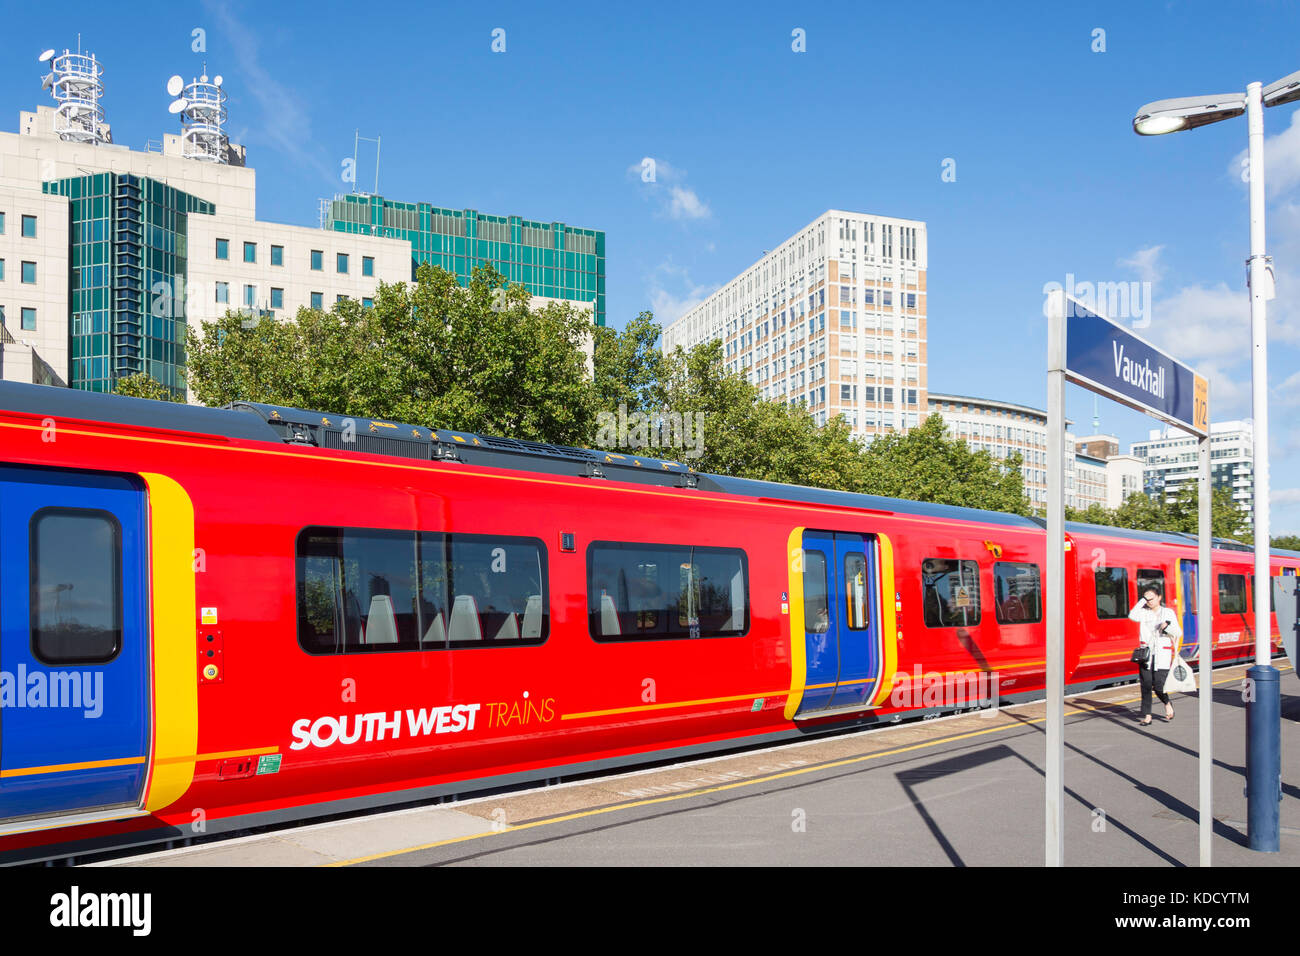 South West Train à la station de Vauxhall, Vauxhall, Greater London, Angleterre, Royaume-Uni Banque D'Images